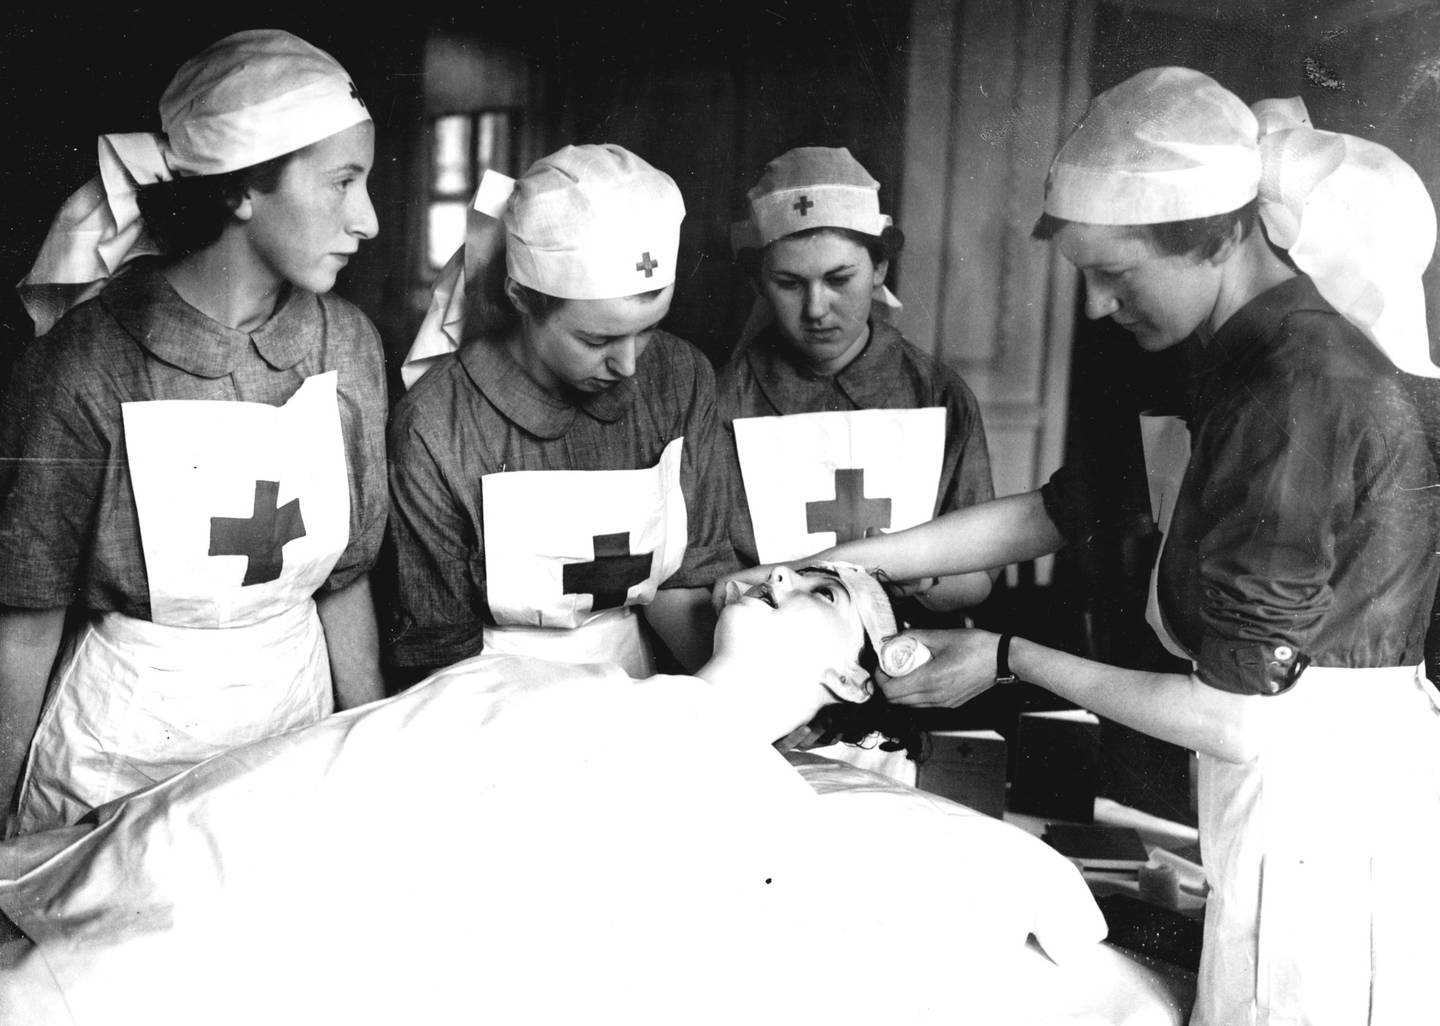 Fredsprisen: Nobels Fredspris for  1917,  1944 og 1963 ble tildelt Den internasjonale Røde Kors Komiteen. 
Illustrasjonsfoto: Røde Kors personell lærer førstehjelp.